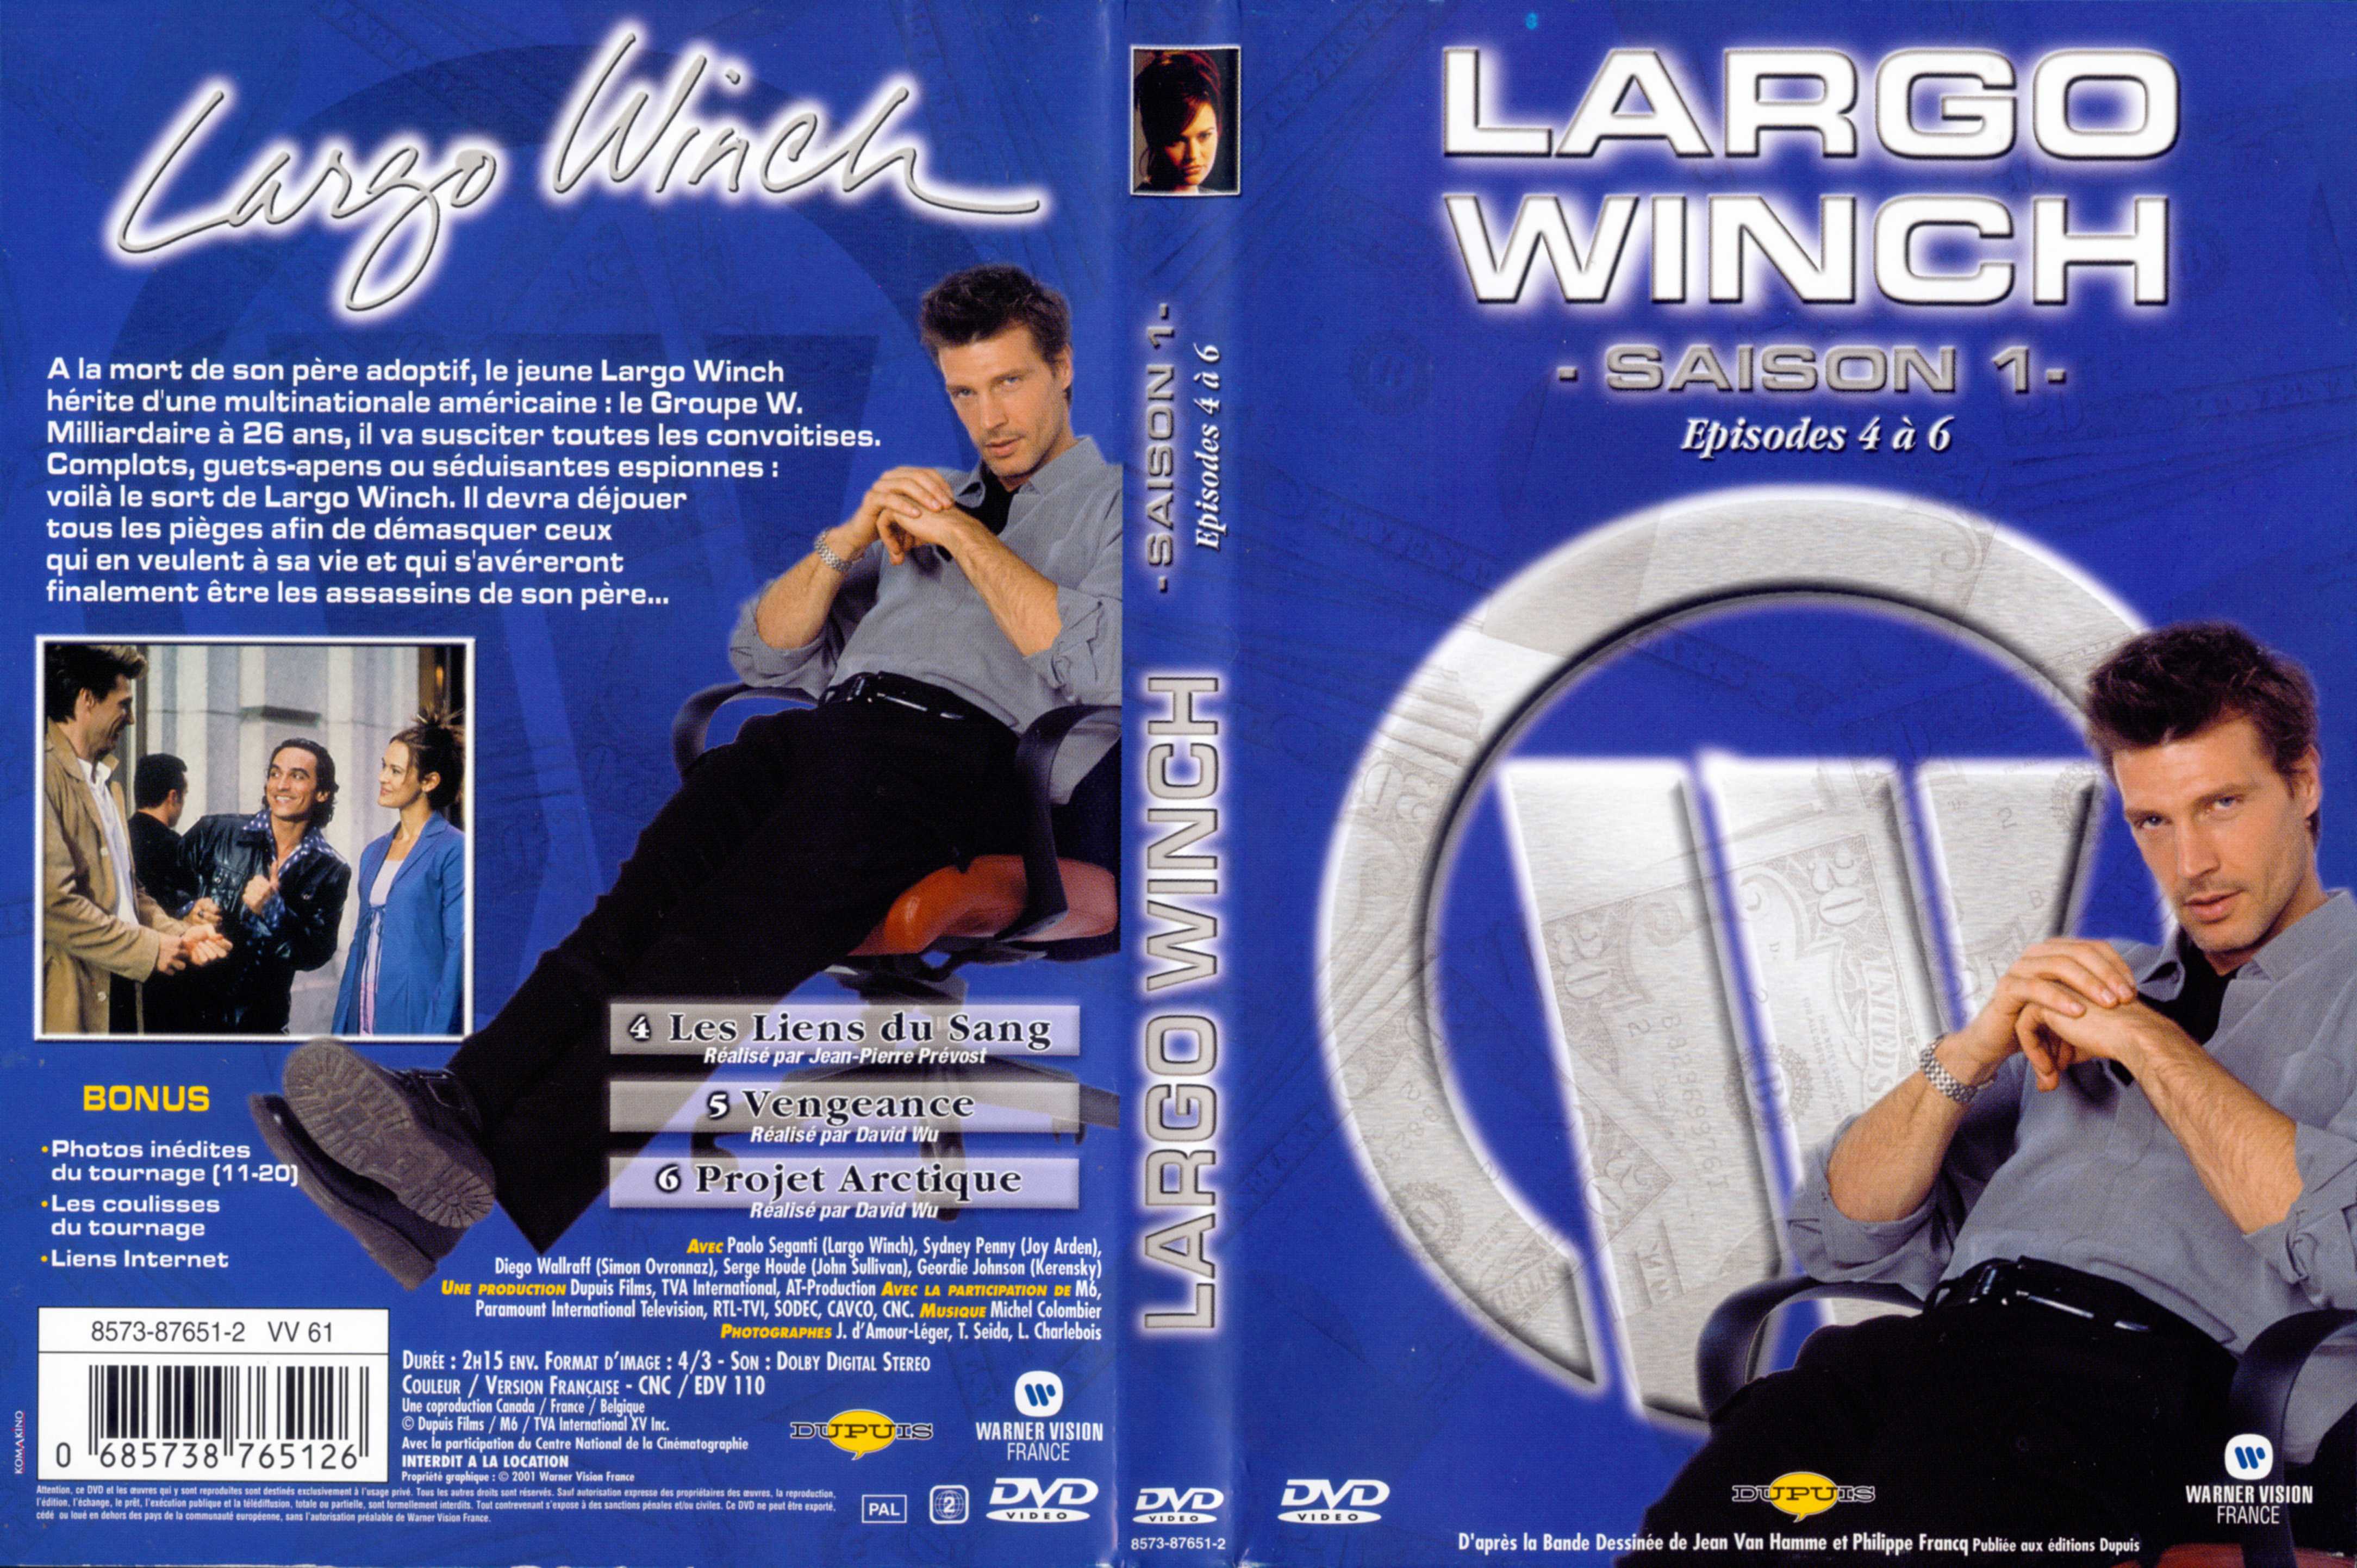 Jaquette DVD Largo Winch Saison 1 vol 02